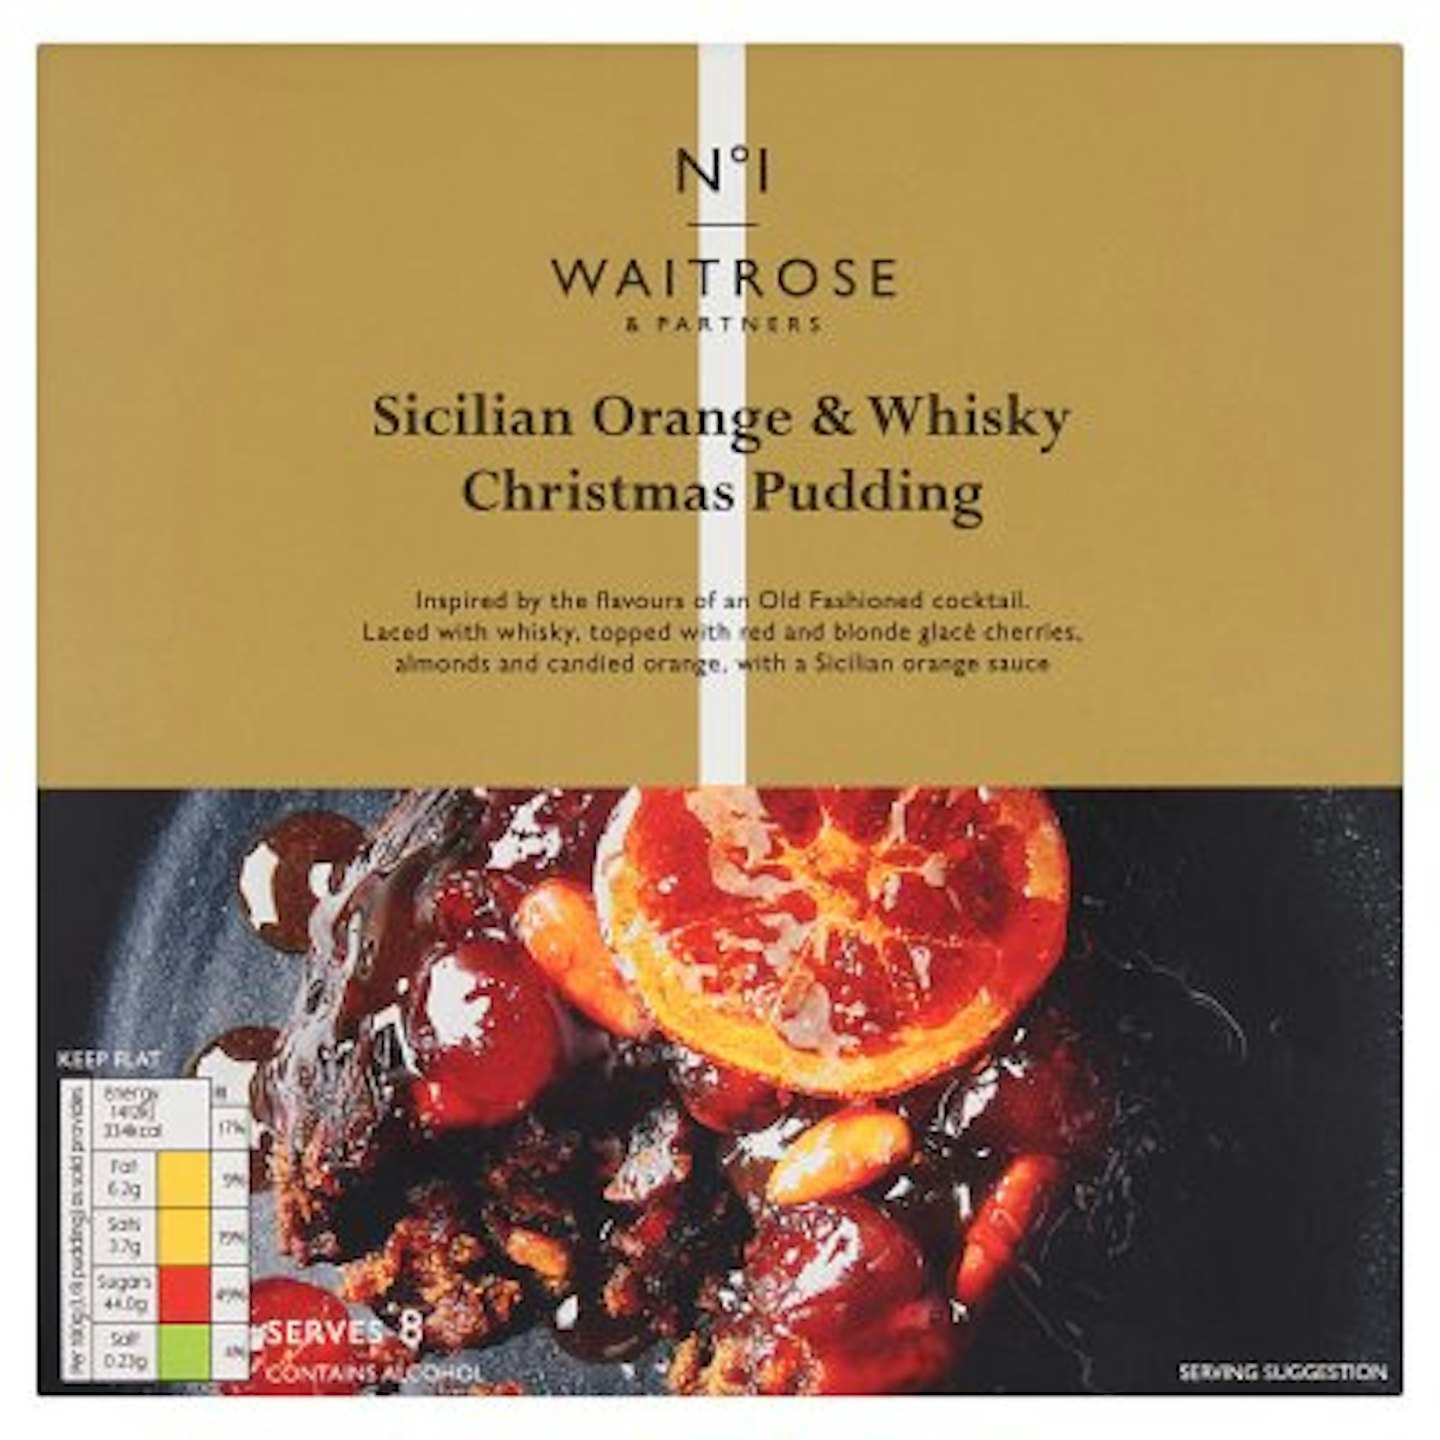 Waitrose No.1 Sicilian Orange & Whisky Christmas Pudding